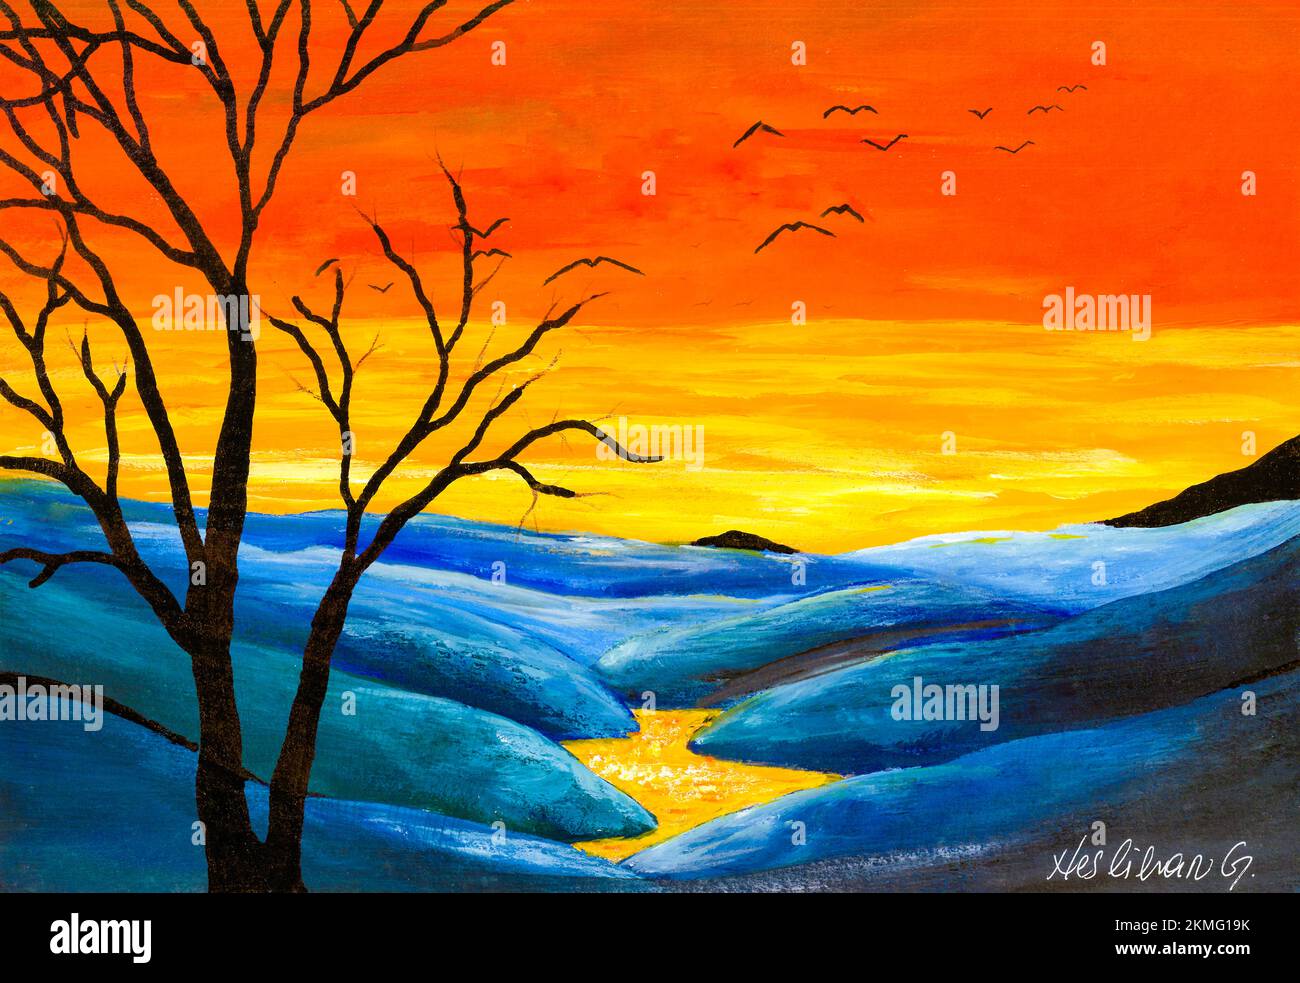 Peinture acrylique originale des collines bleues, des nuages jaunes et du ciel orange. Peint par le photographe. Banque D'Images